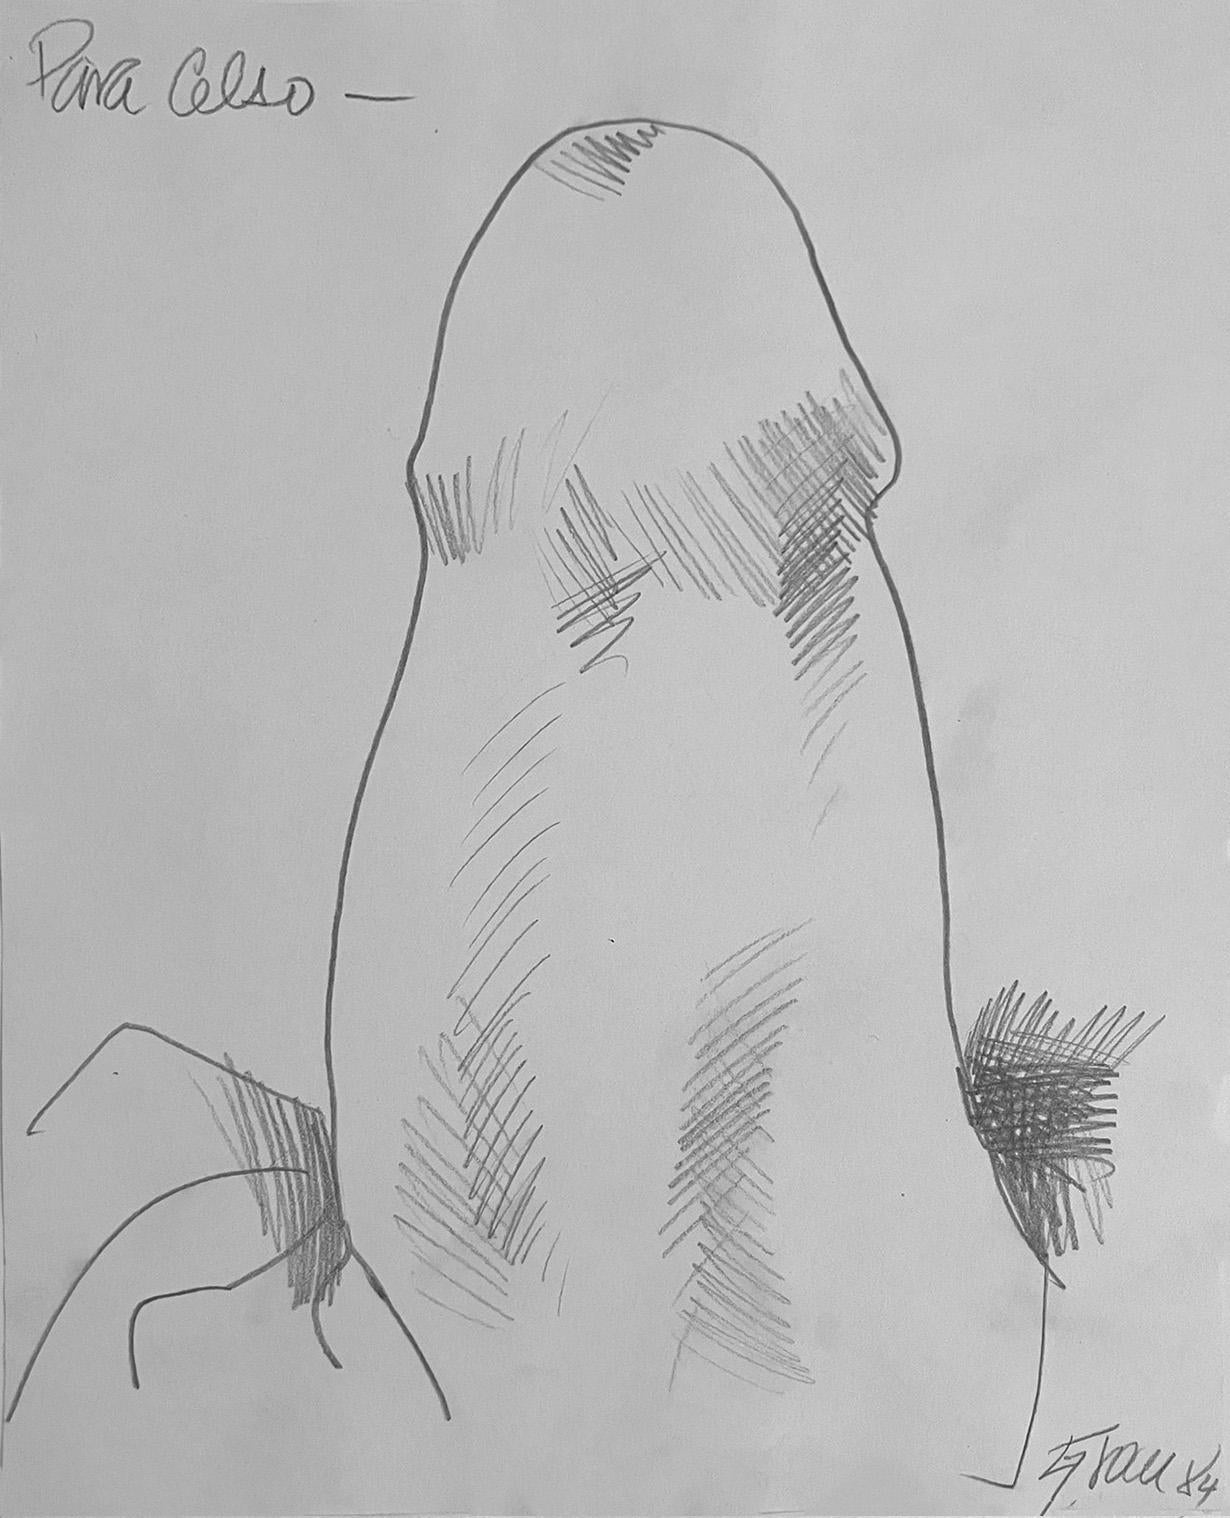 Nude Enrique Grau - Untitled III, dessin de nu sur papier